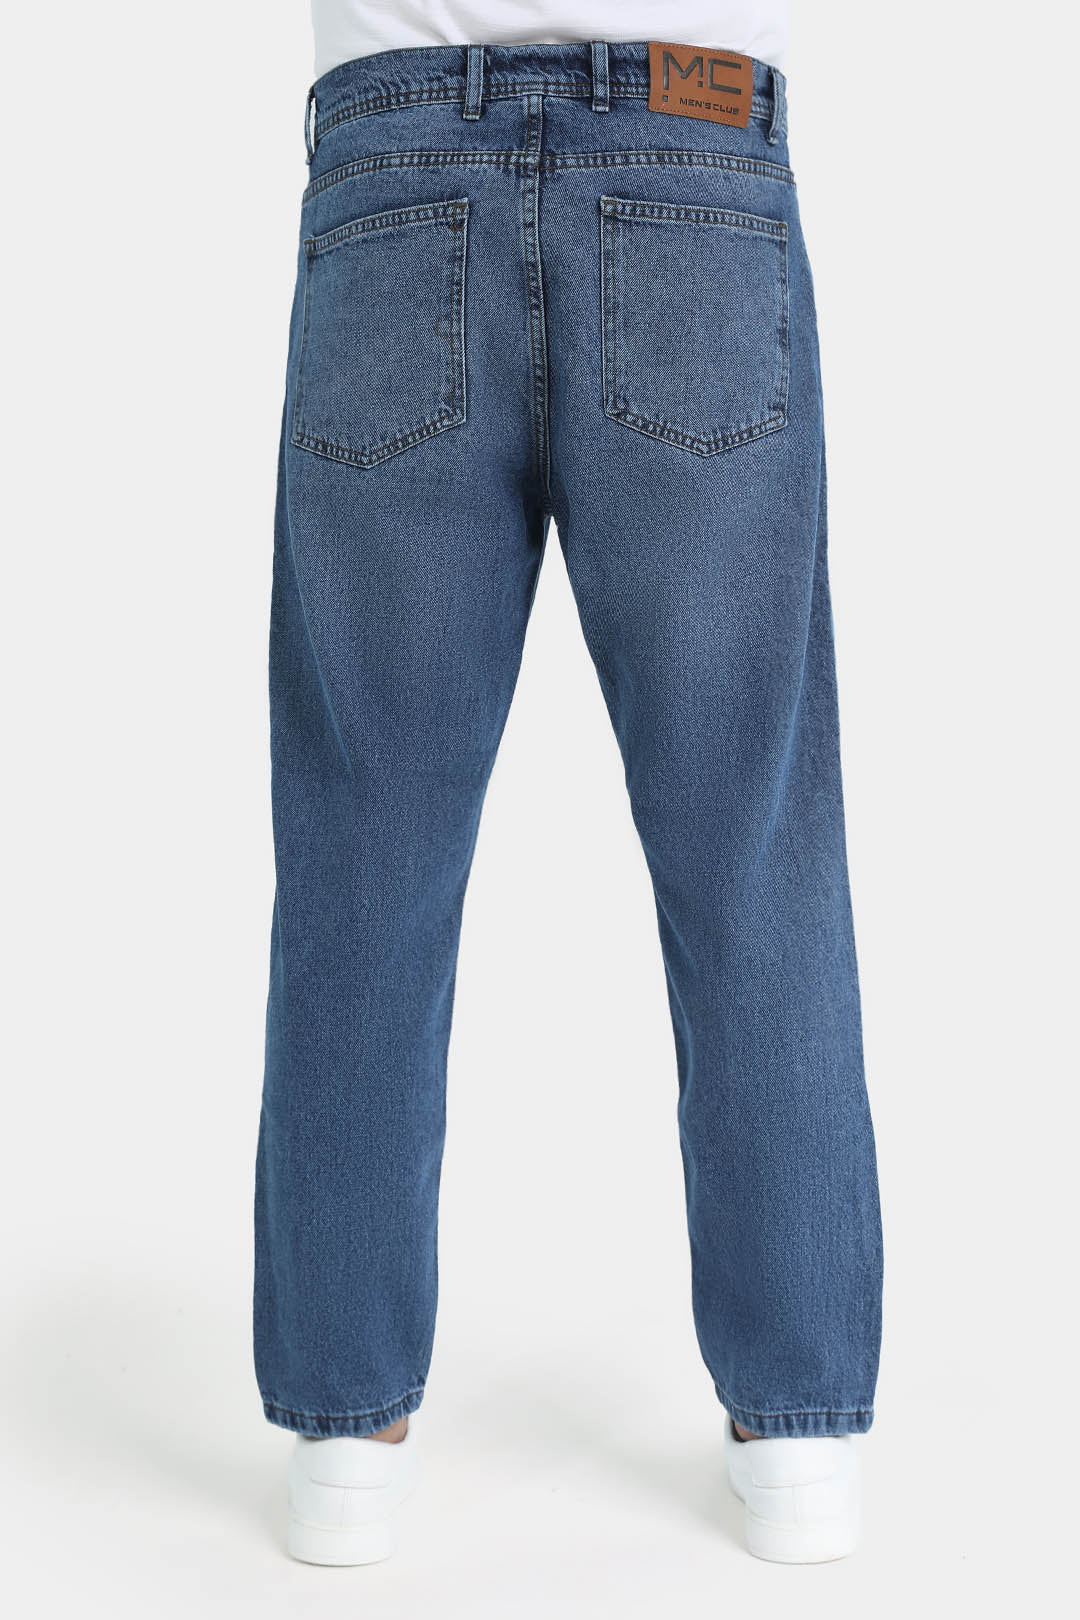 jeans loos fit jean pants